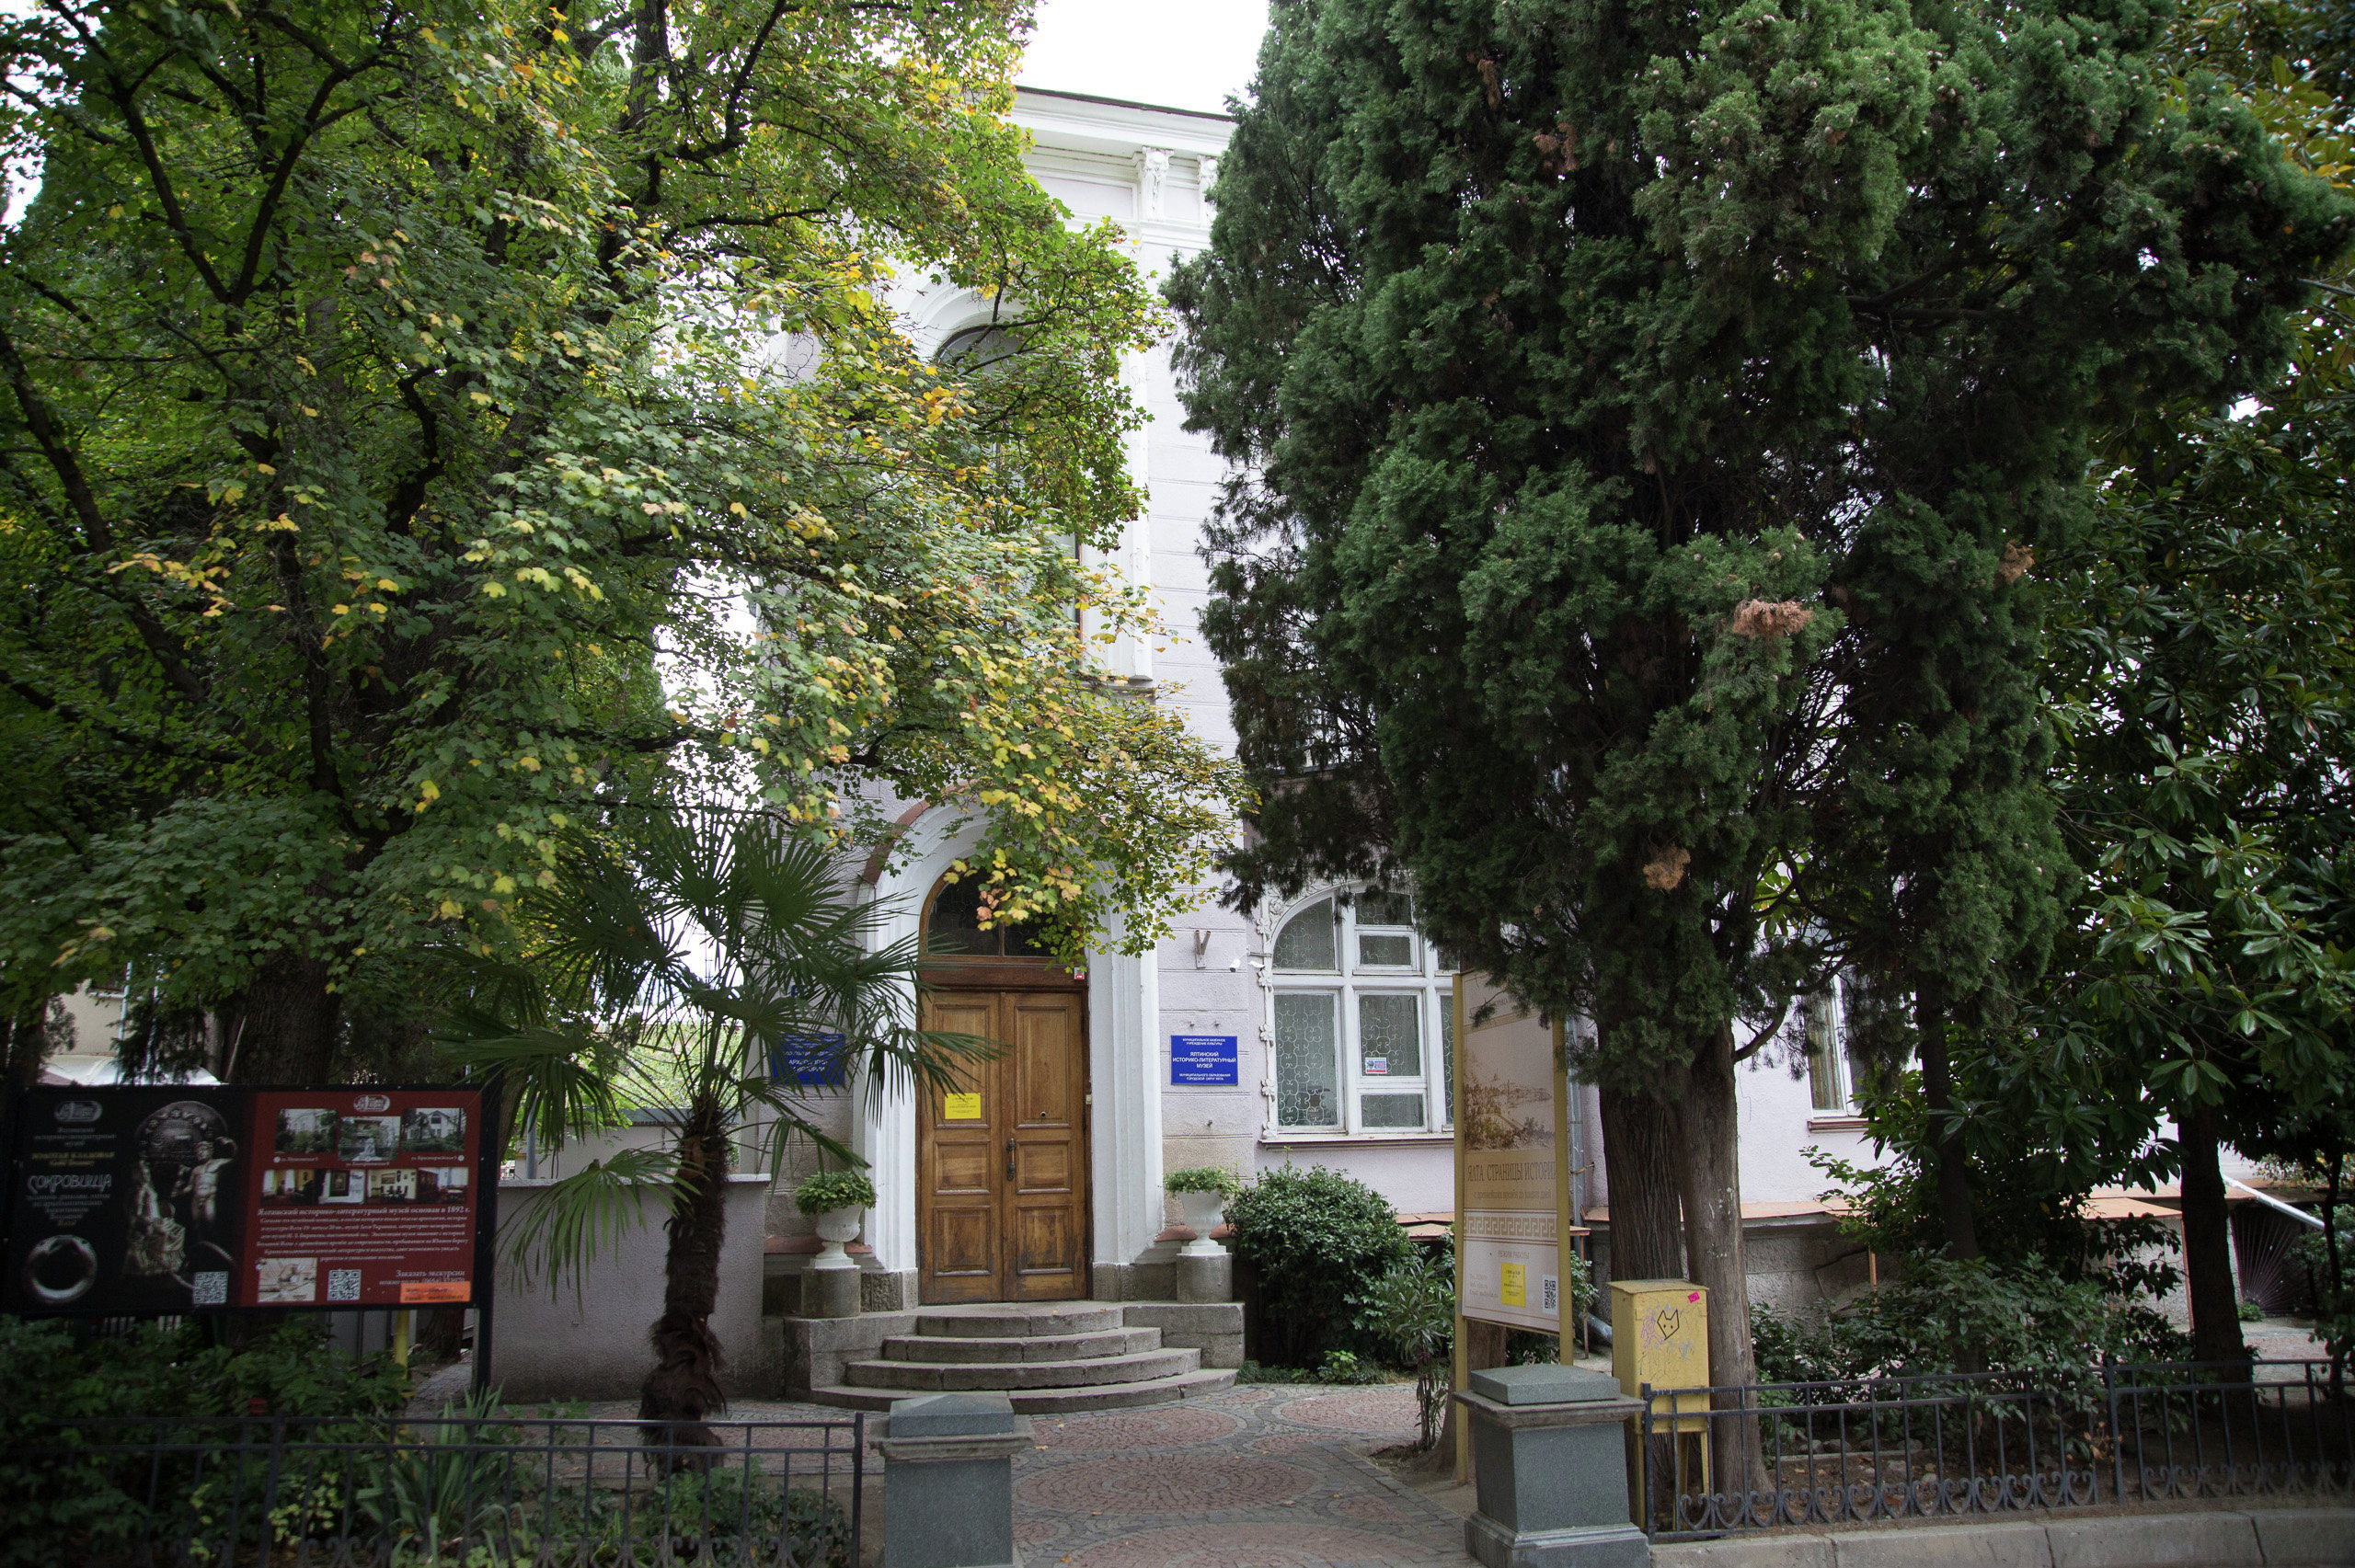 Ялтинский историко-литературный музей